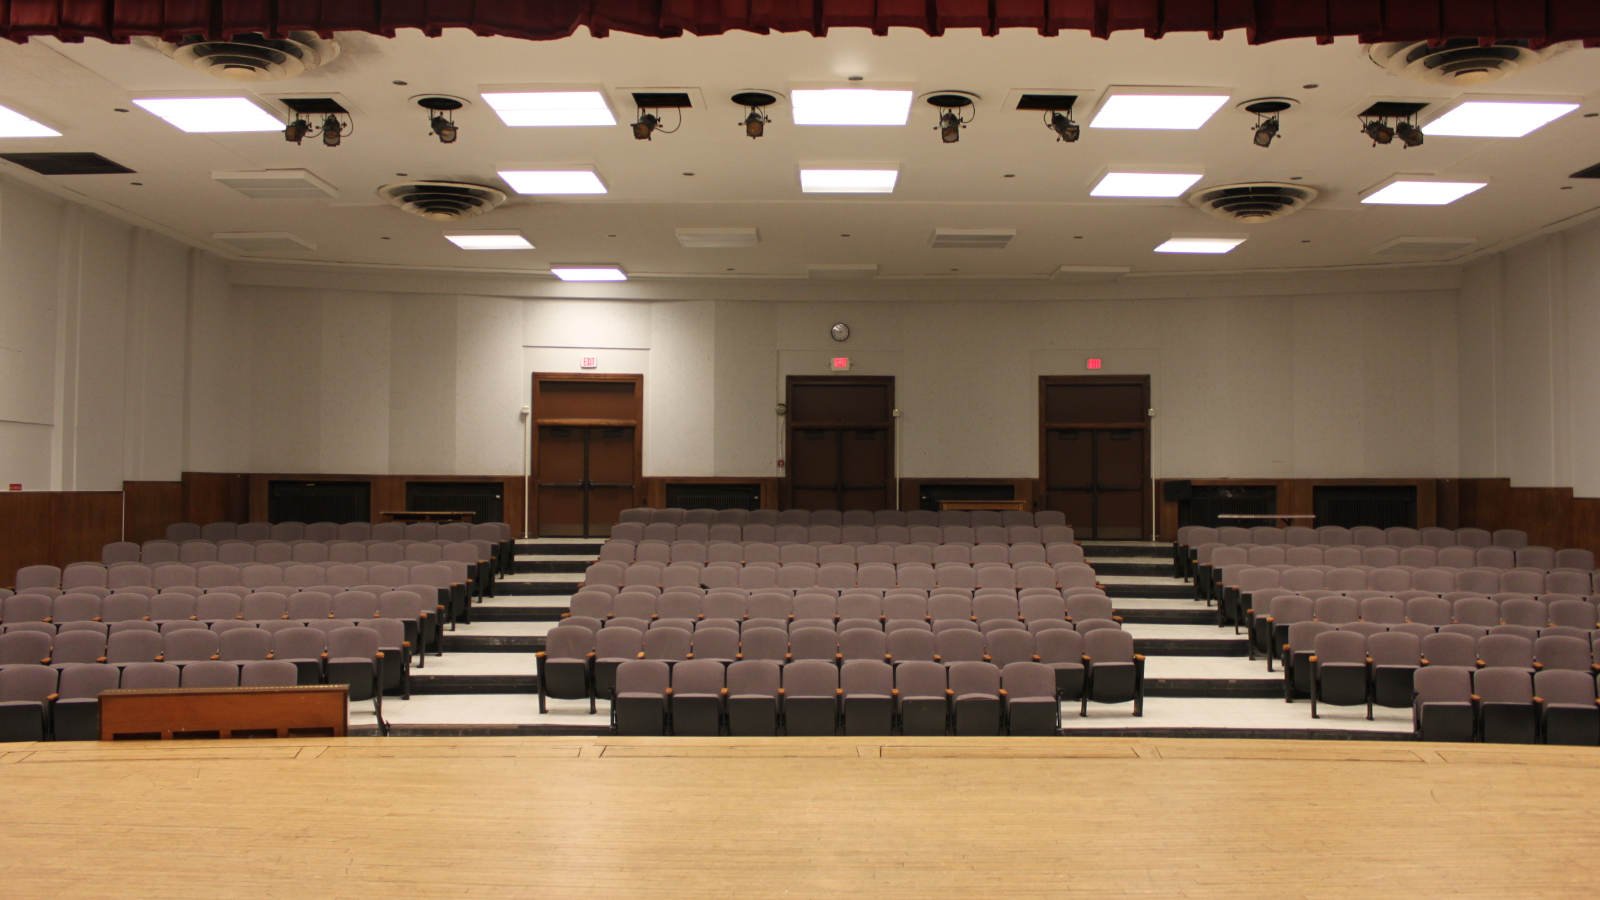 Hughes Auditorium seats